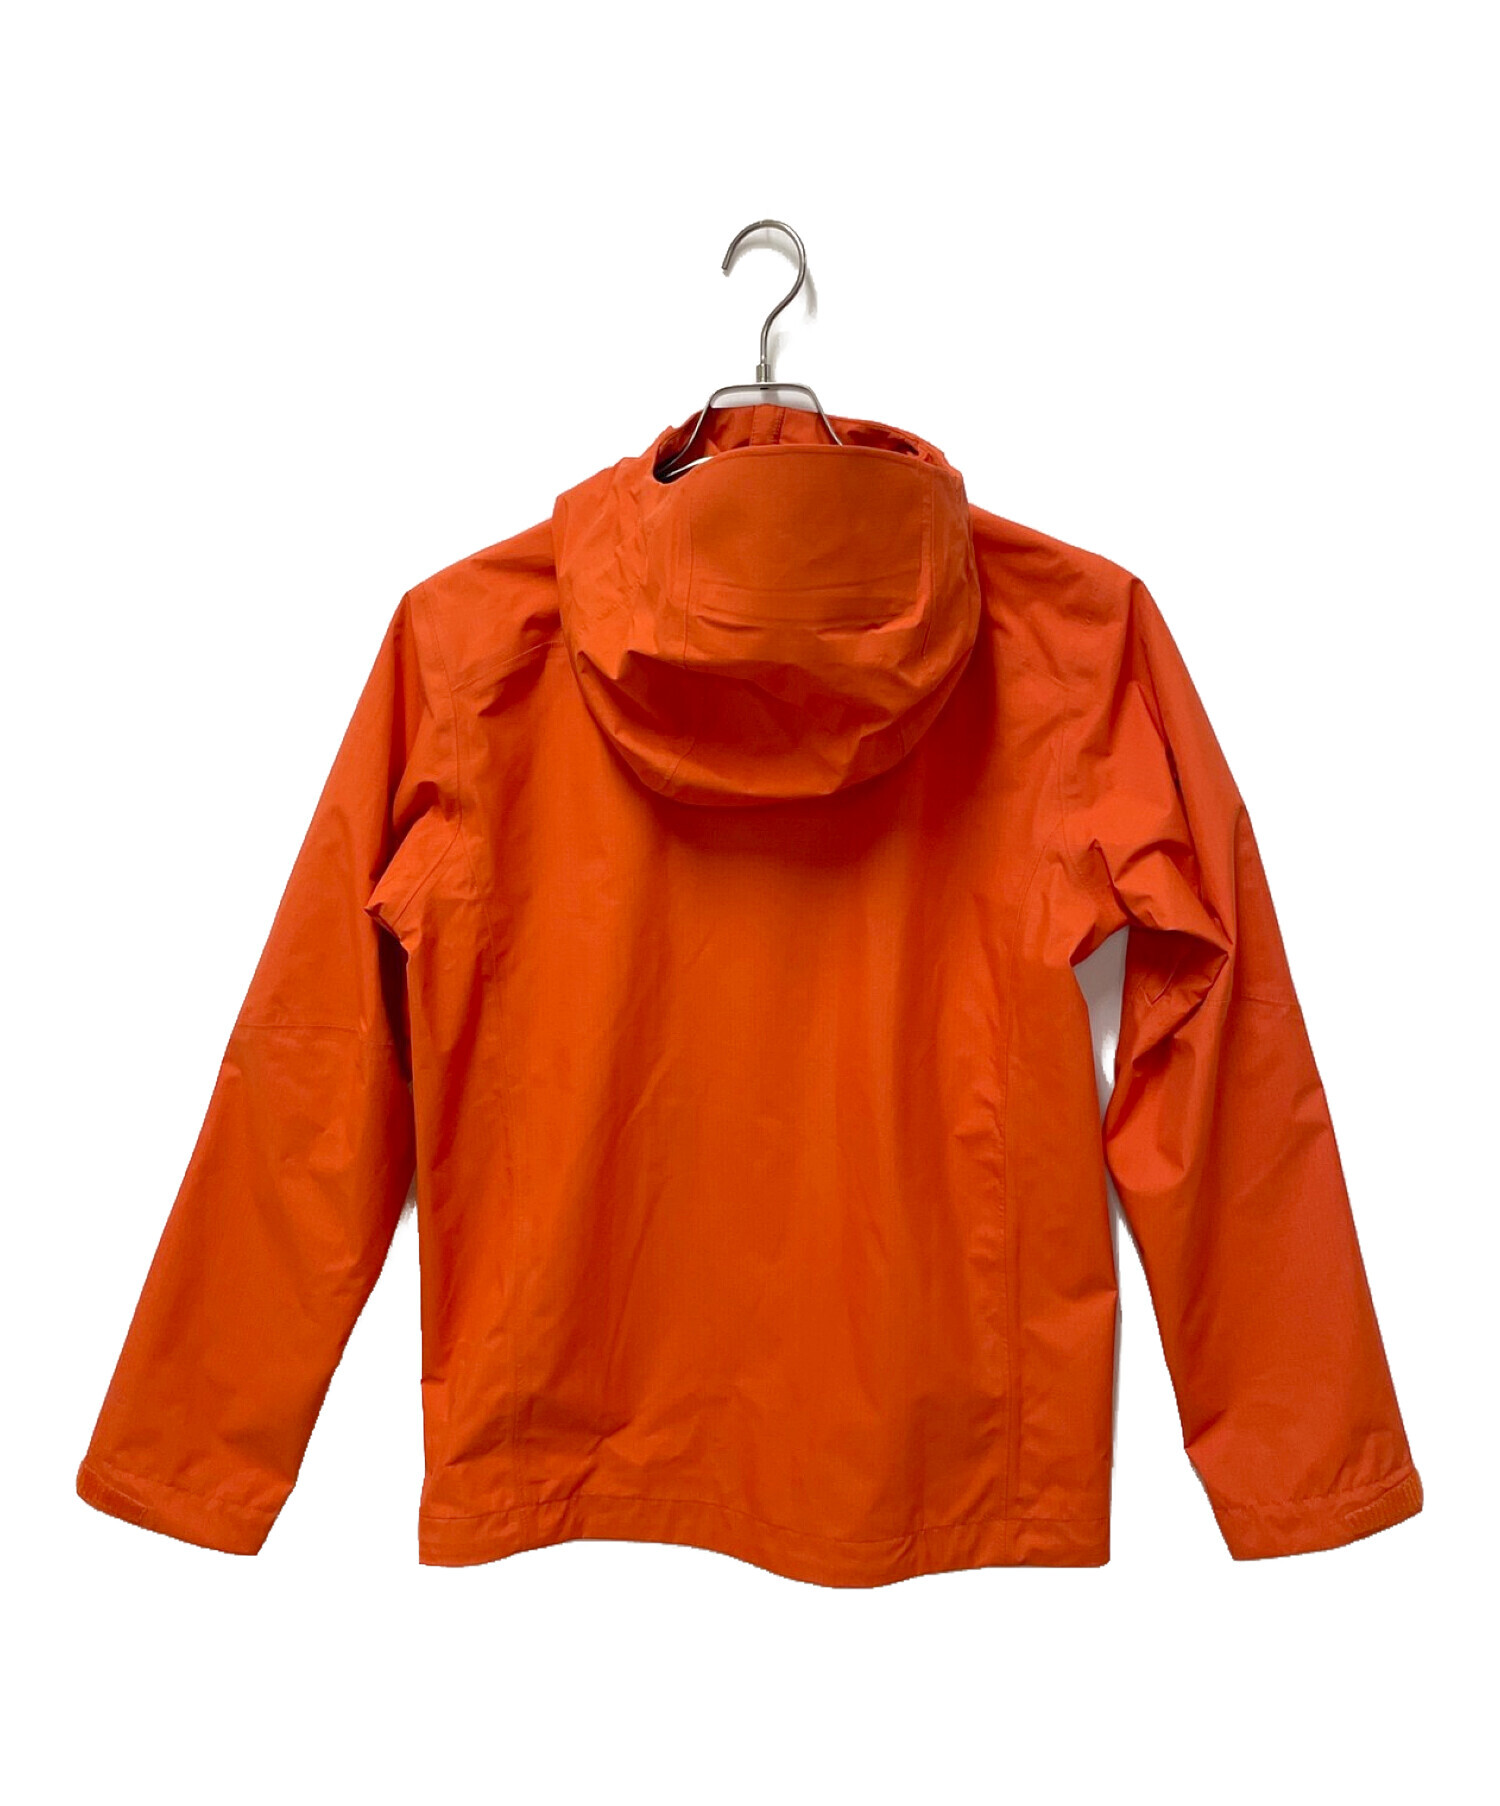 Patagonia (パタゴニア) グラナイトクレストジャケット オレンジ サイズ:XS